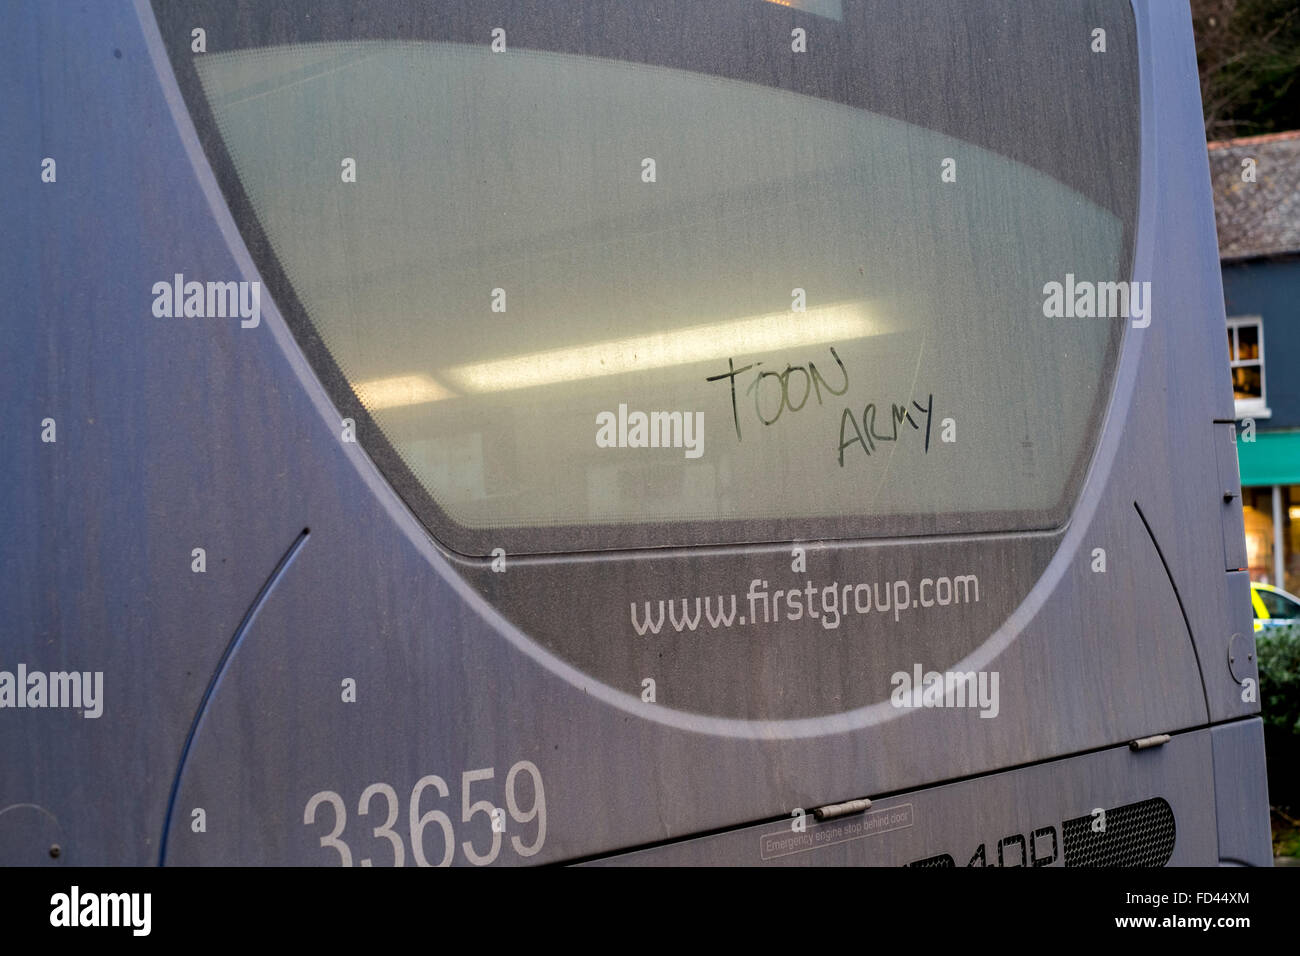 Toon Army, der Spitzname von Newcastle United FC, geschrieben auf der Heckscheibe eines Busses in Falmouth, Cornwall Stockfoto